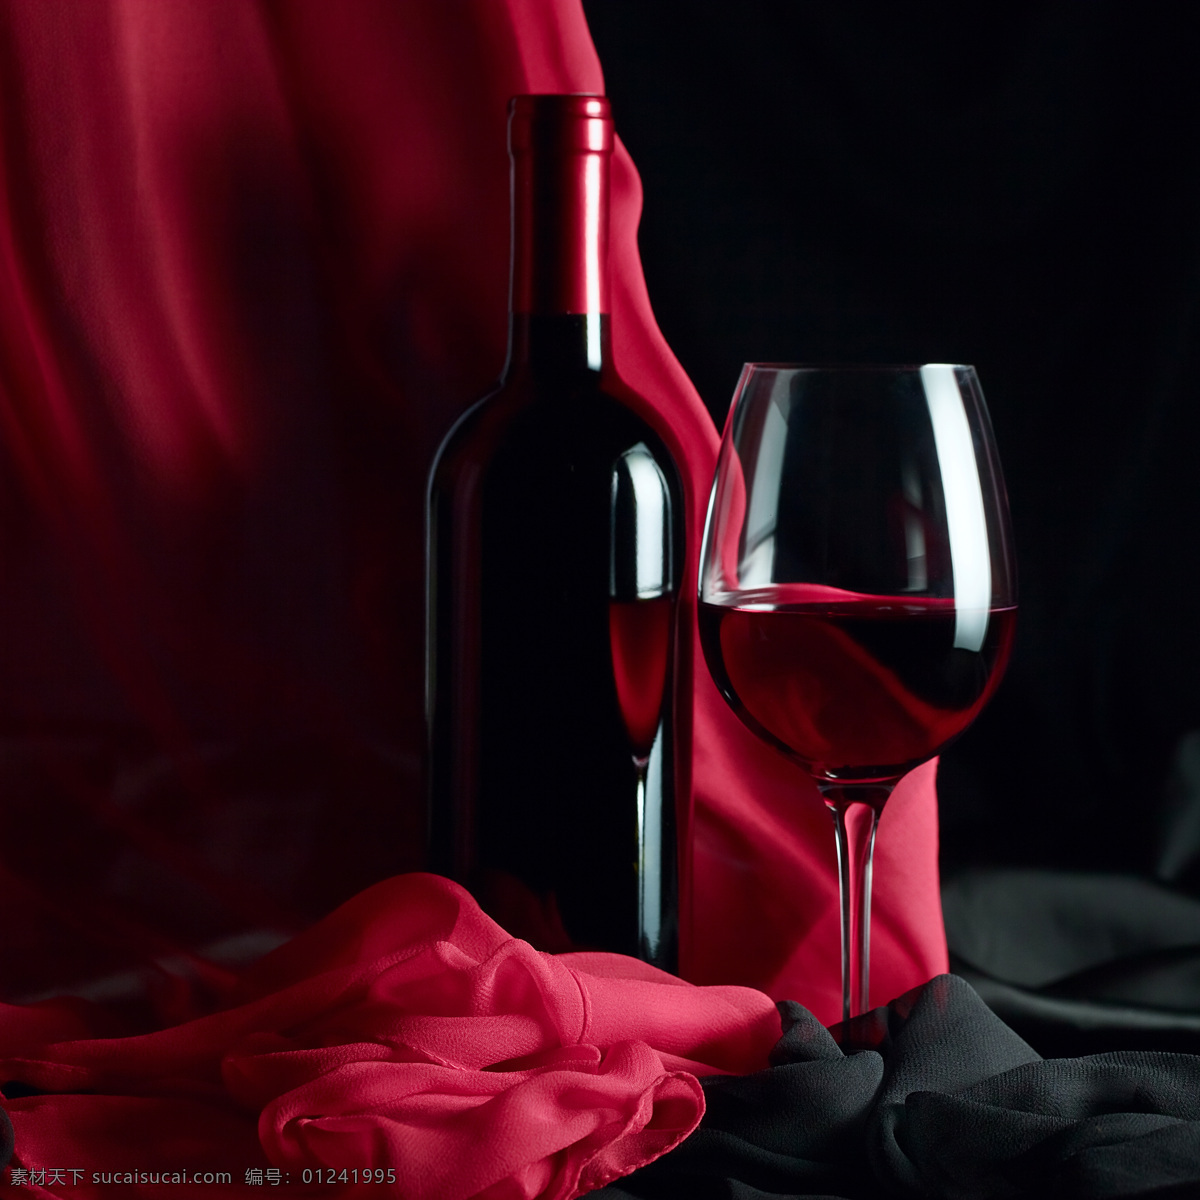 红色 布 背景 红酒 酒杯 葡萄酒 酒类 红色布背景 酒类图片 餐饮美食